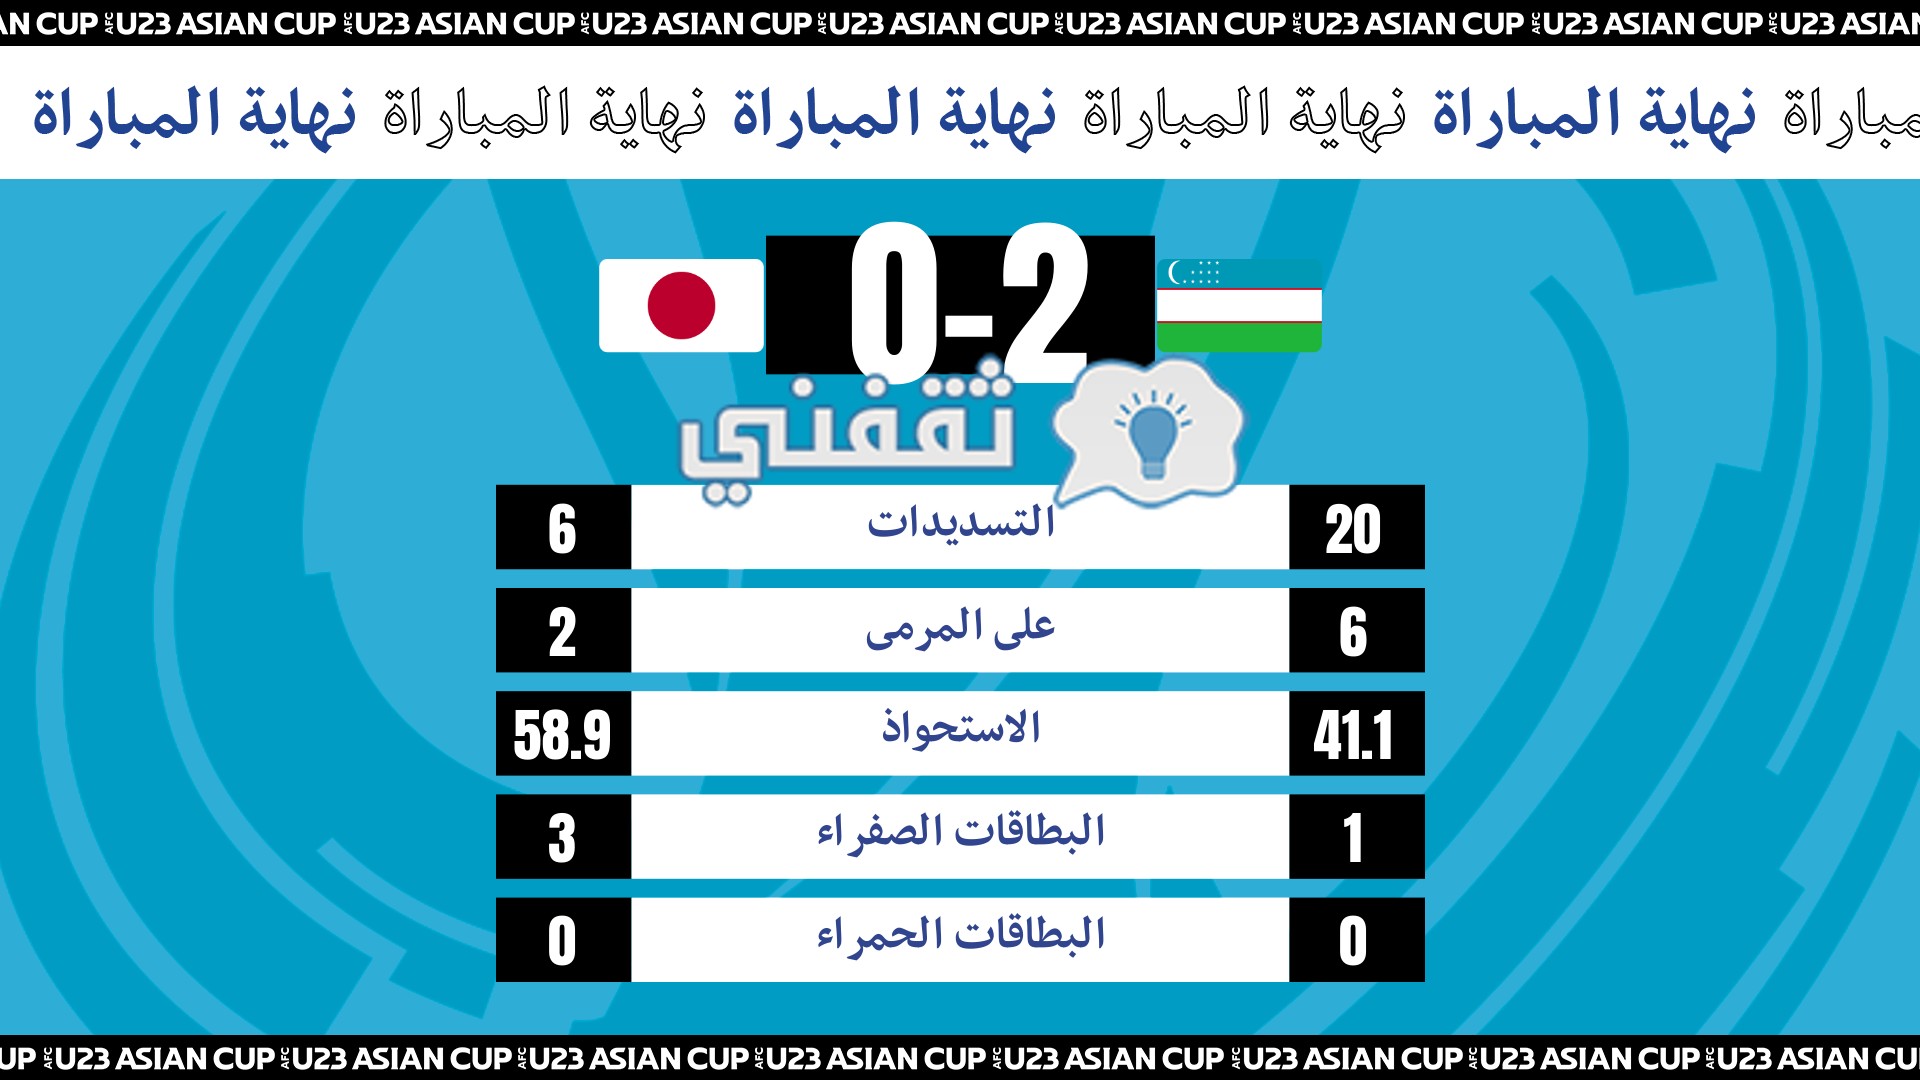 إحصائيات ونتيجة مباراة أوزبكستان واليابان في نصف كأس آسيا تحت 23 سنة 2022